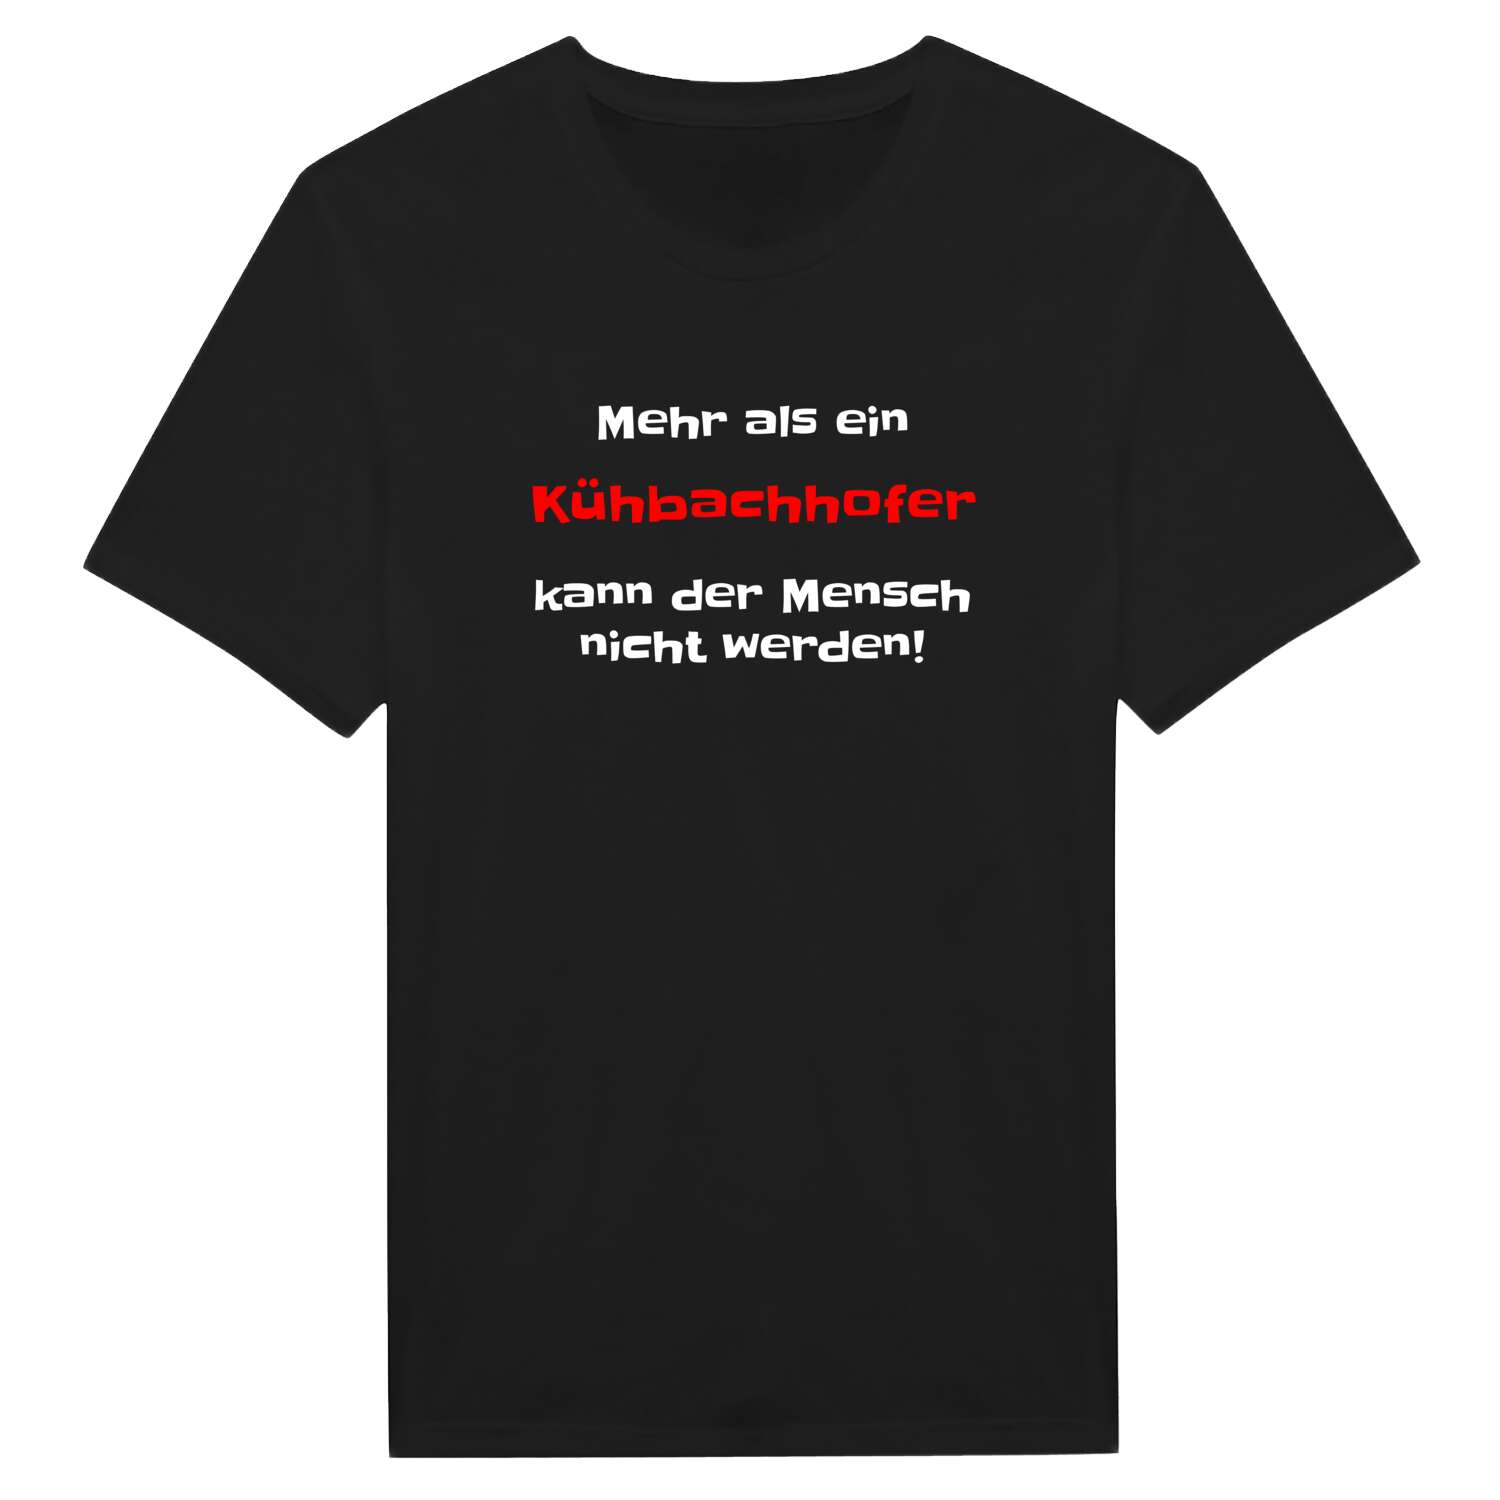 Kühbachhof T-Shirt »Mehr als ein«